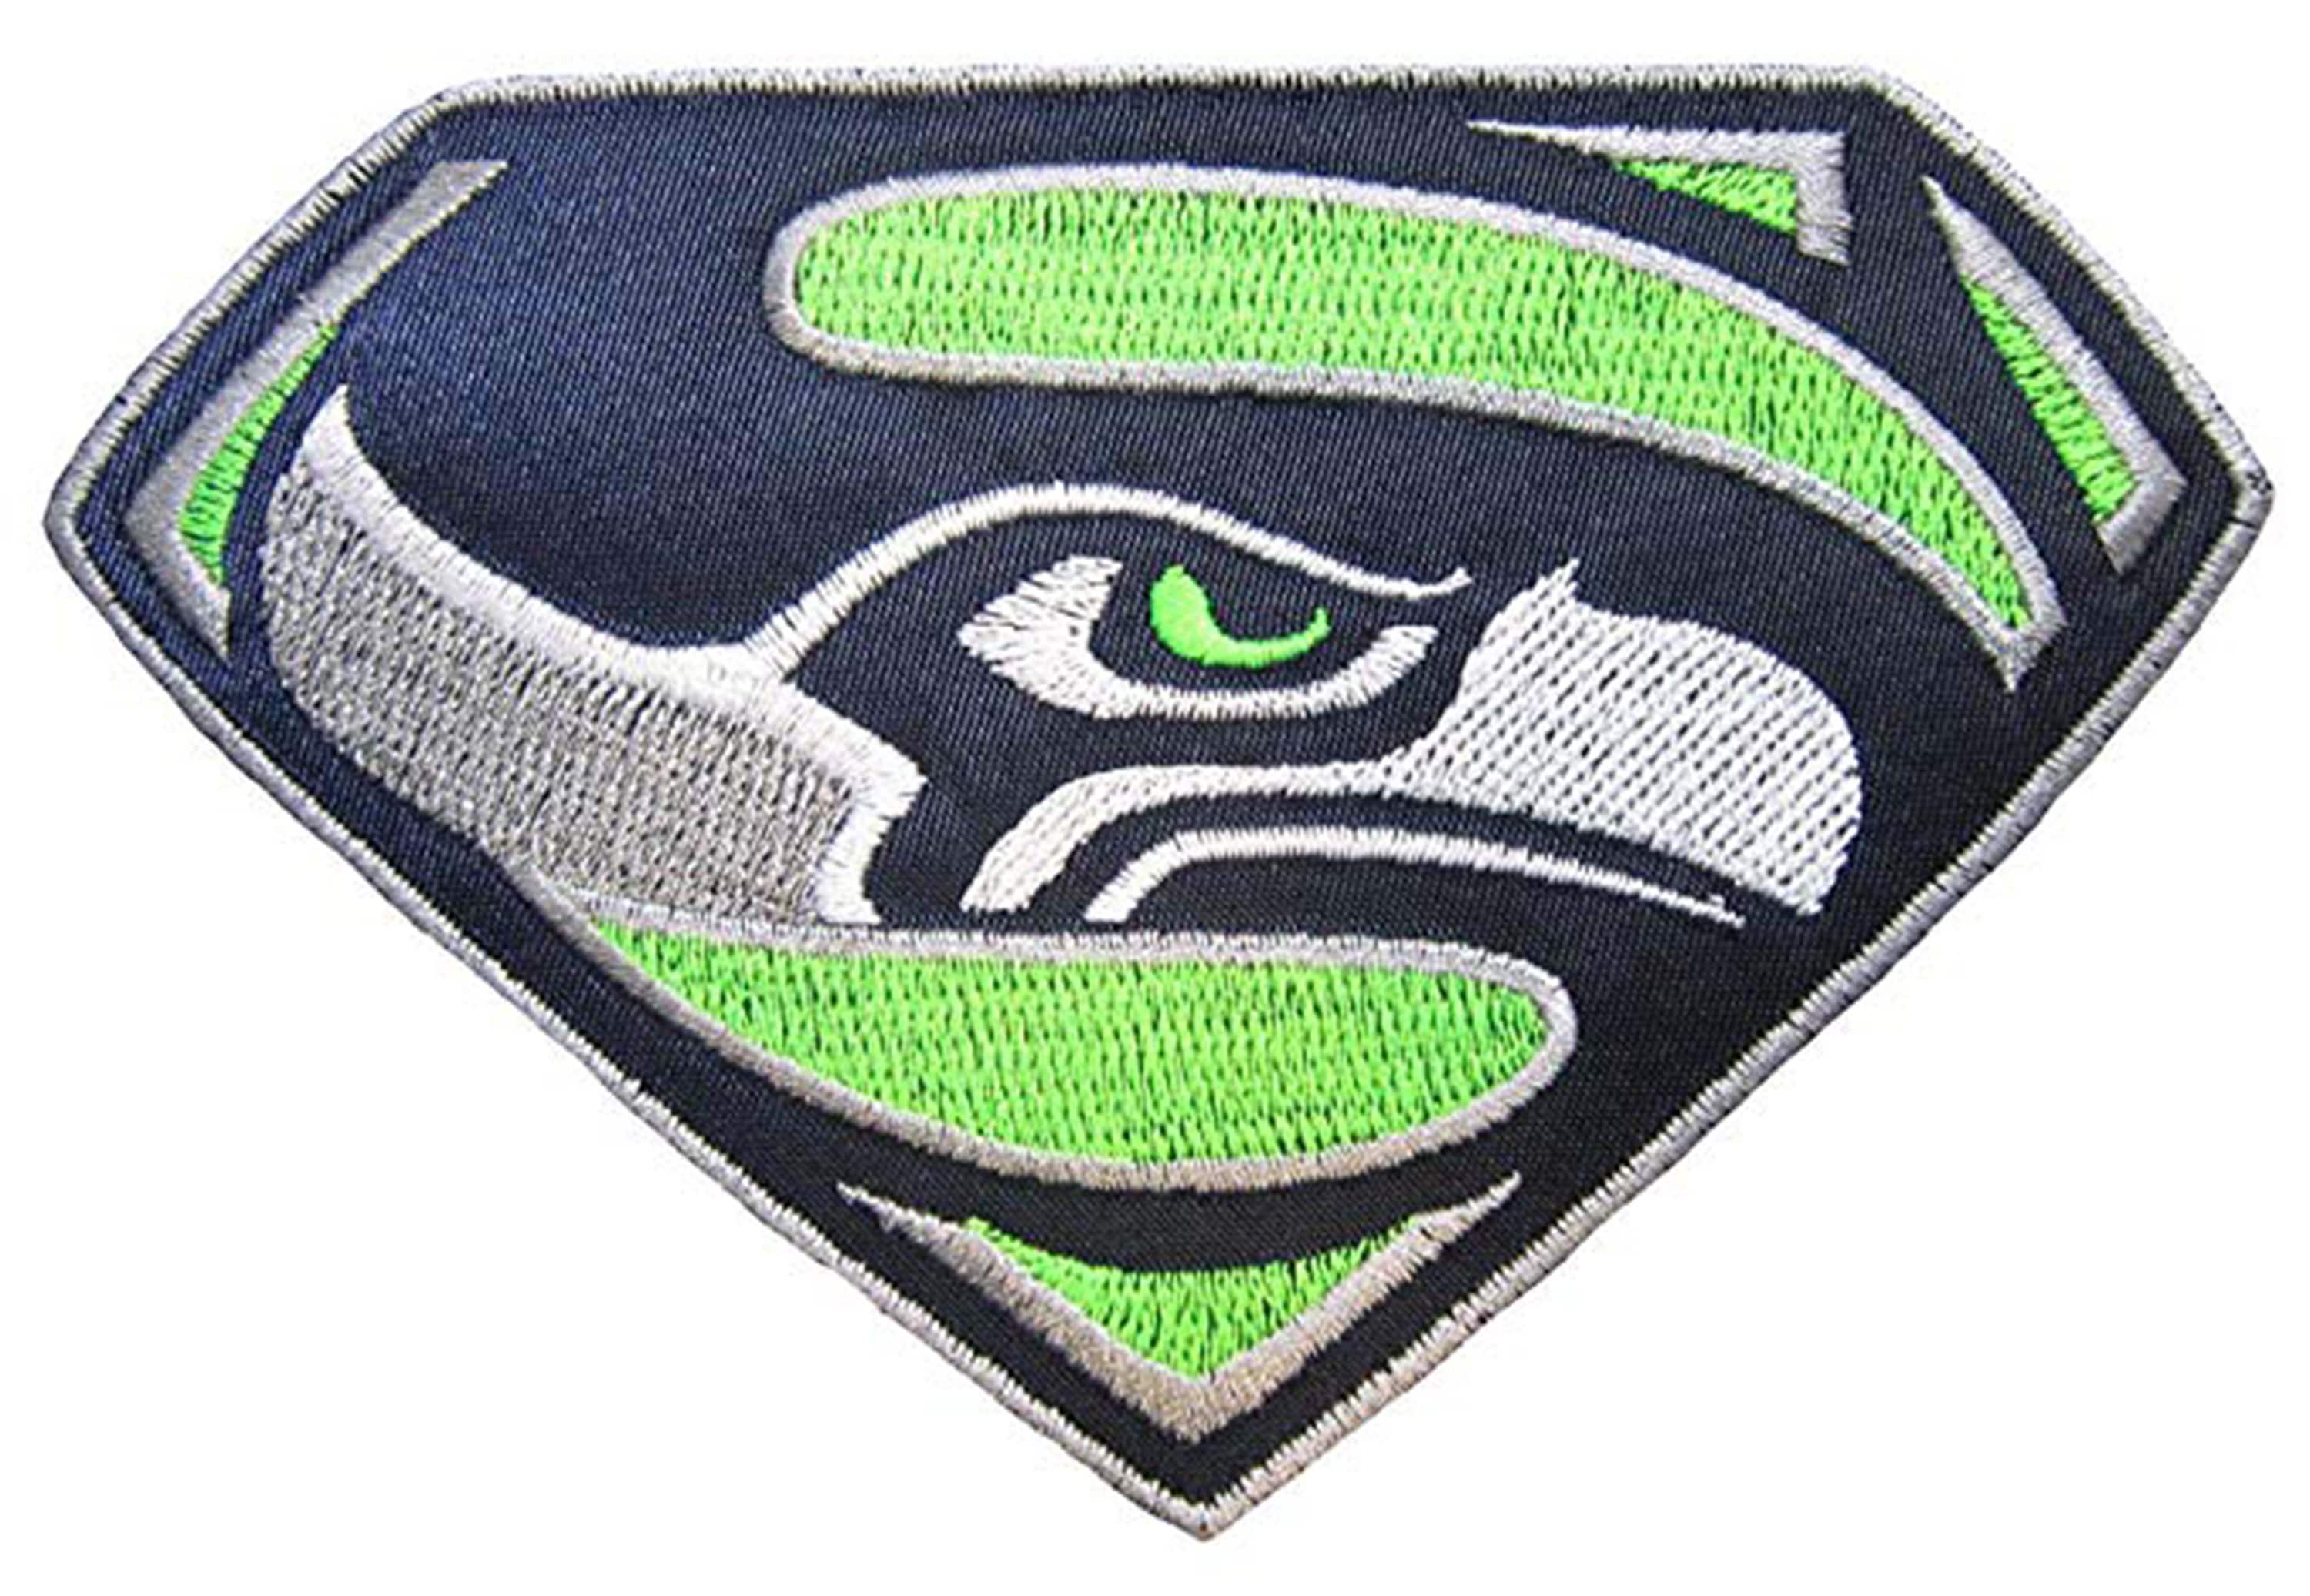 Collection patch. Патч Supersonic. Superhawk logo. Купить патч таков путь. Seattle logo.